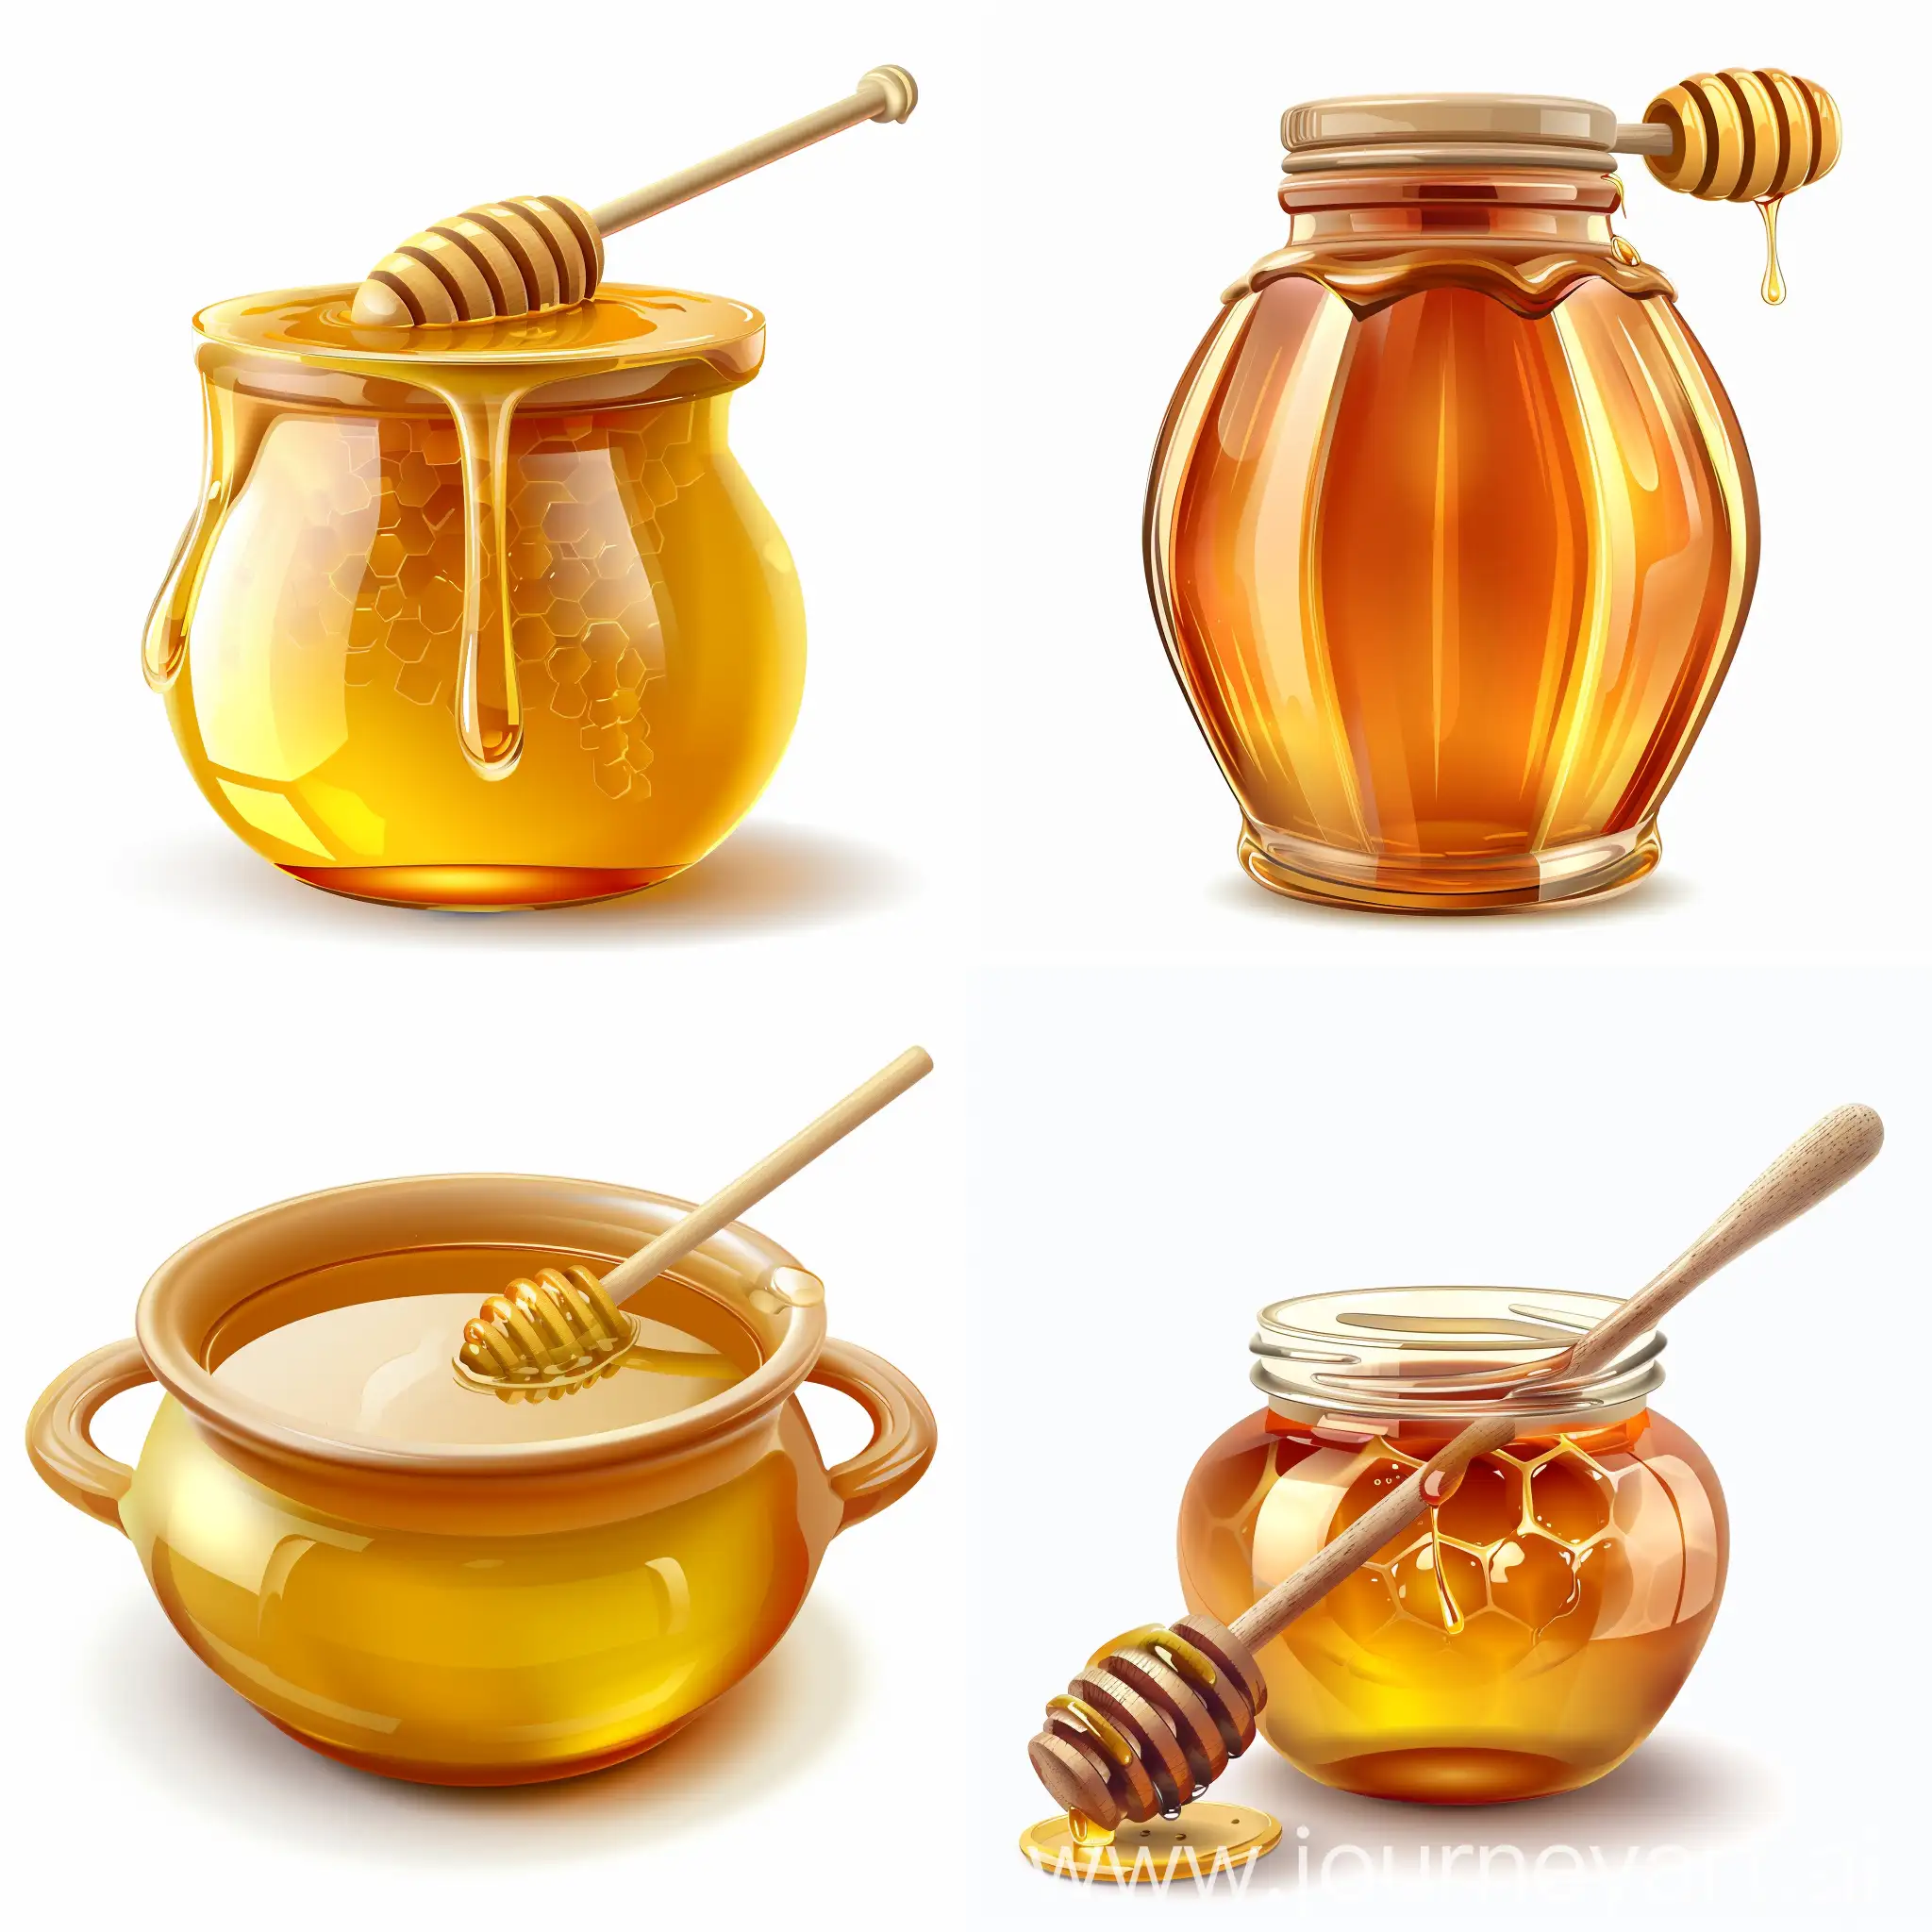 Realistic-Honey-Pot-and-Medicines-Still-Life